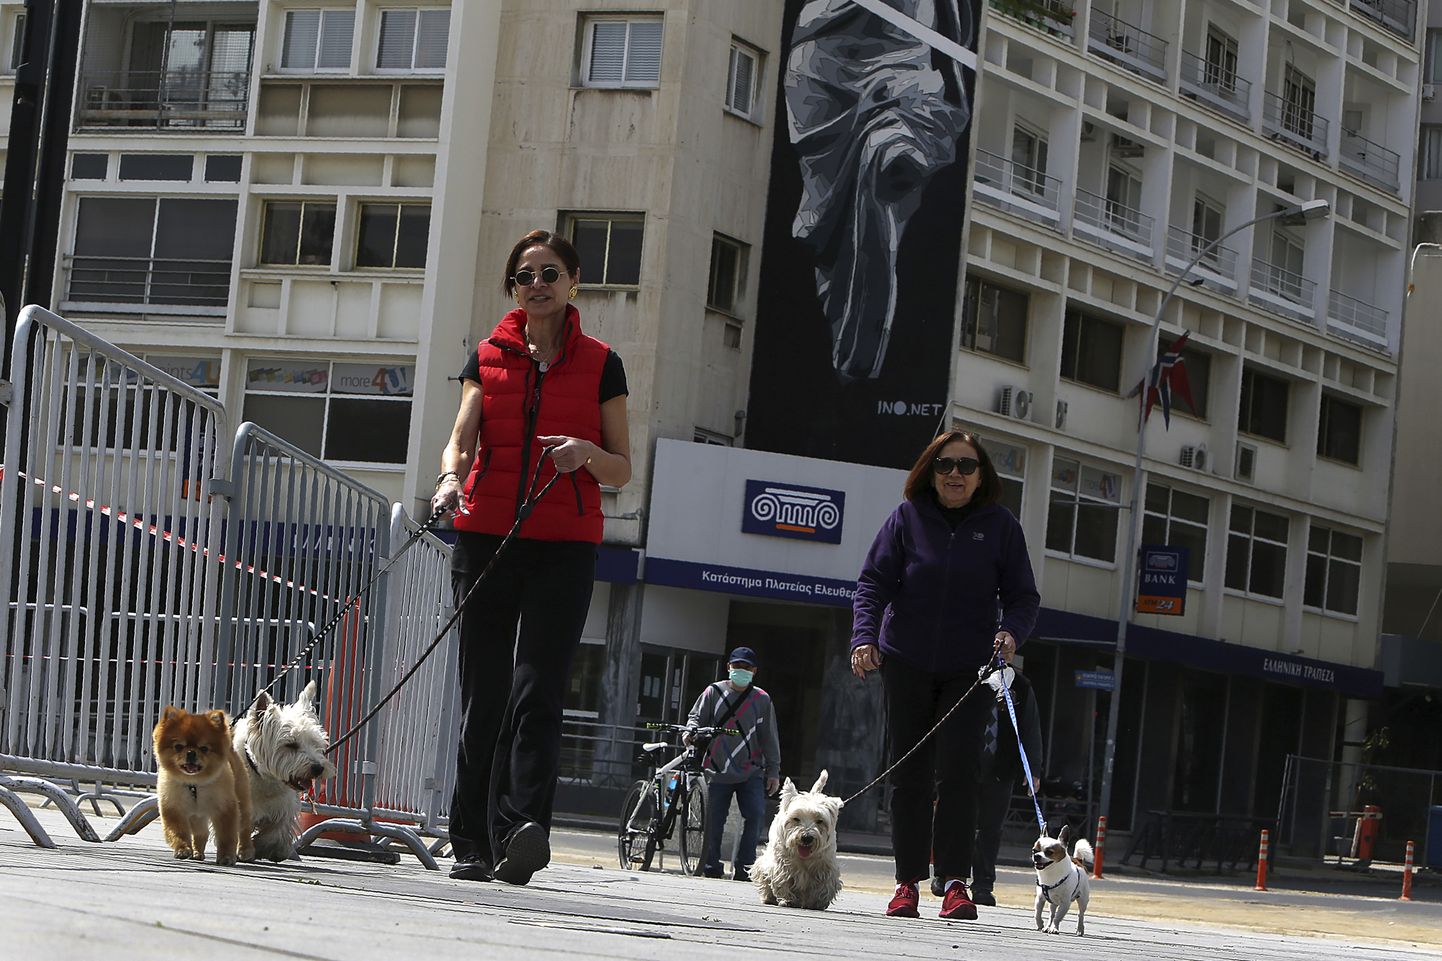 Naised jalutamas koertega Küprose pealinnas Nikosias.